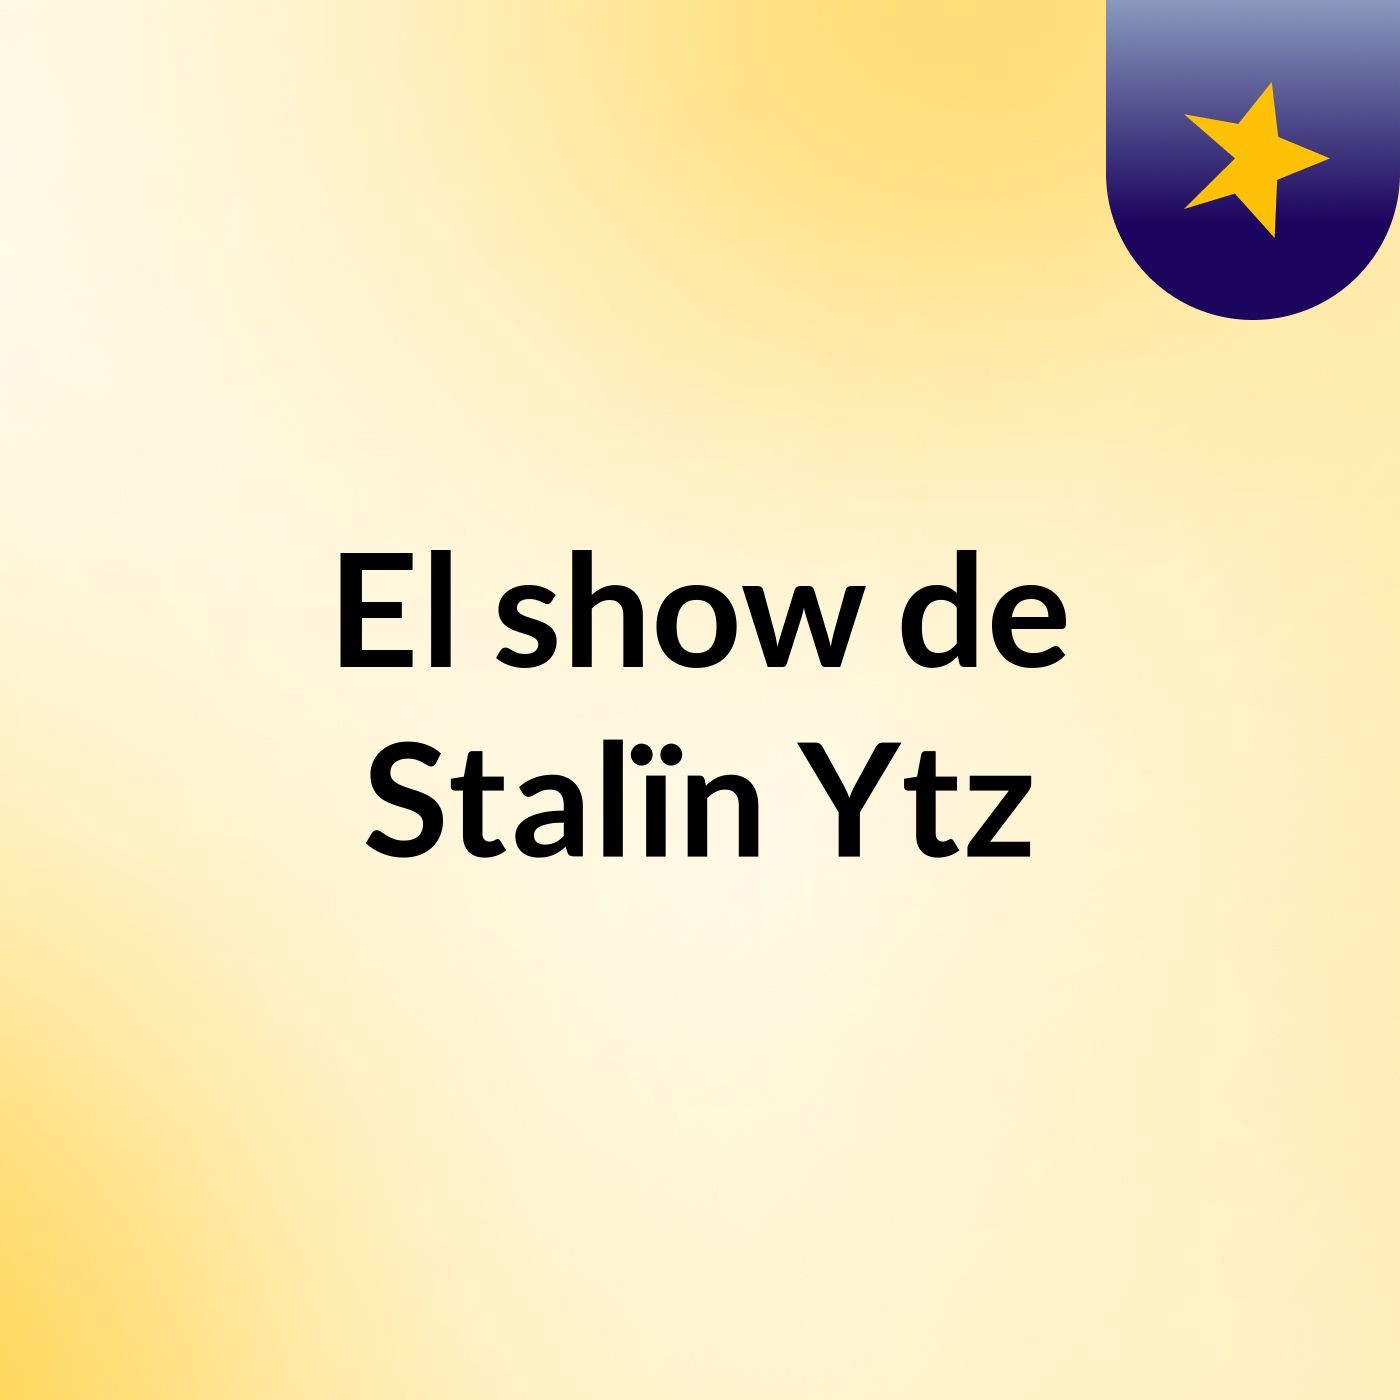 El show de Stalïn Ytz